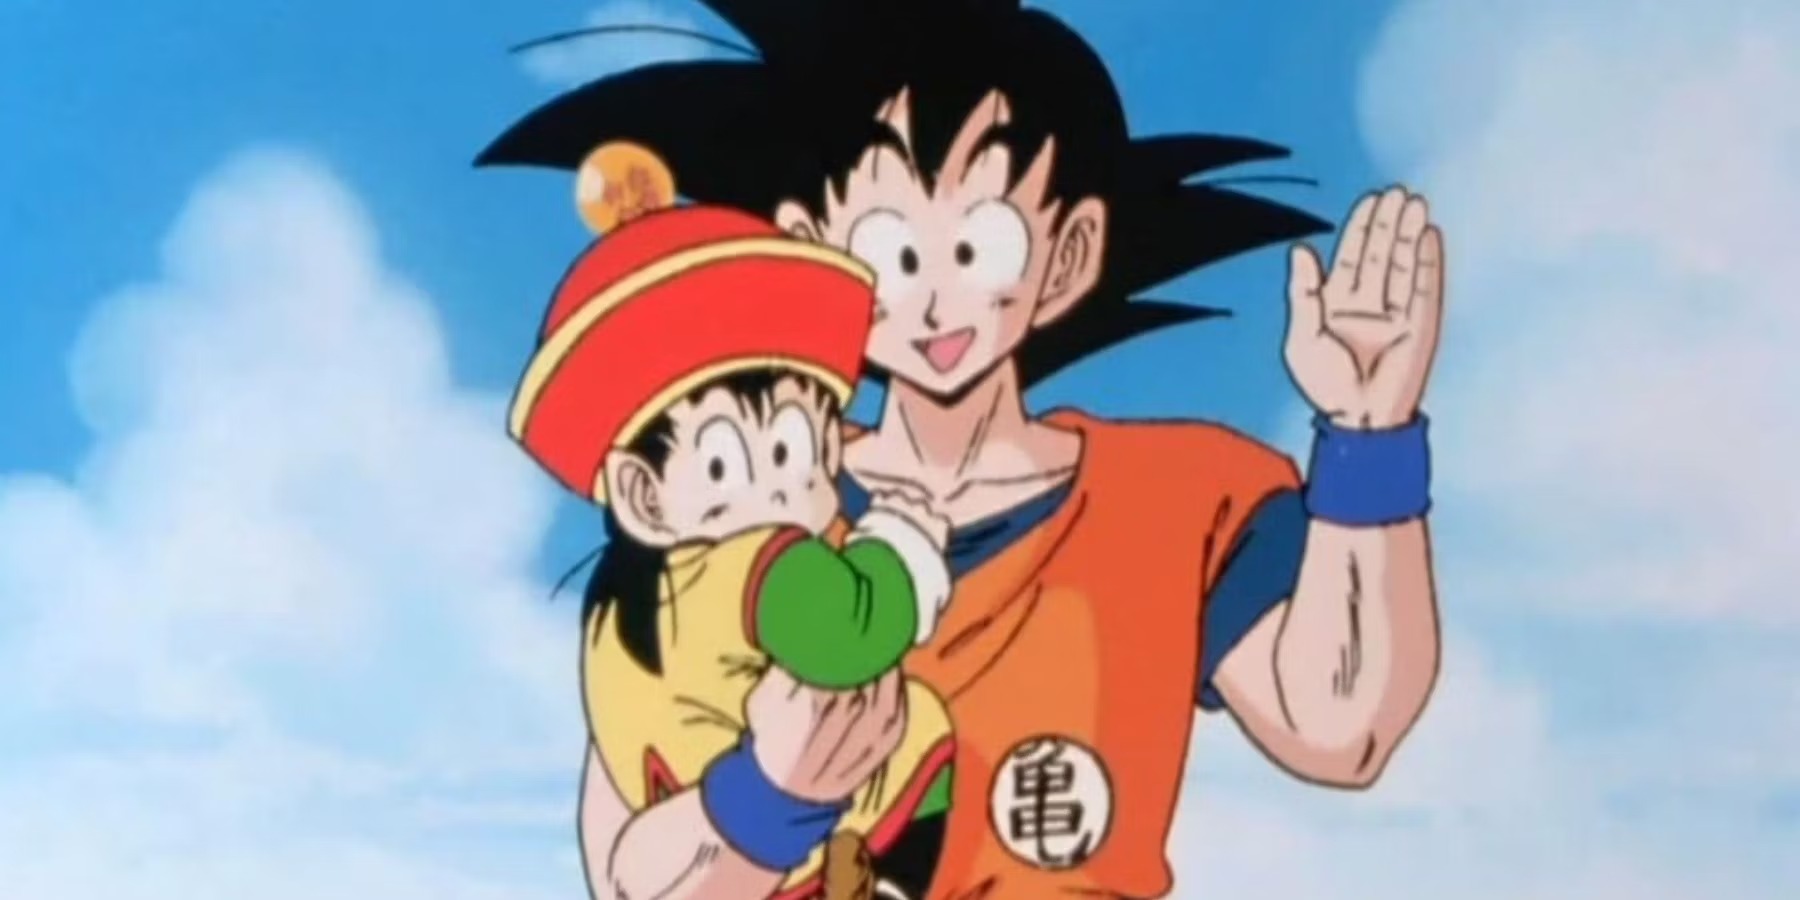 Stream Rap Anime, De pai para filho, (Dragon Ball Z )